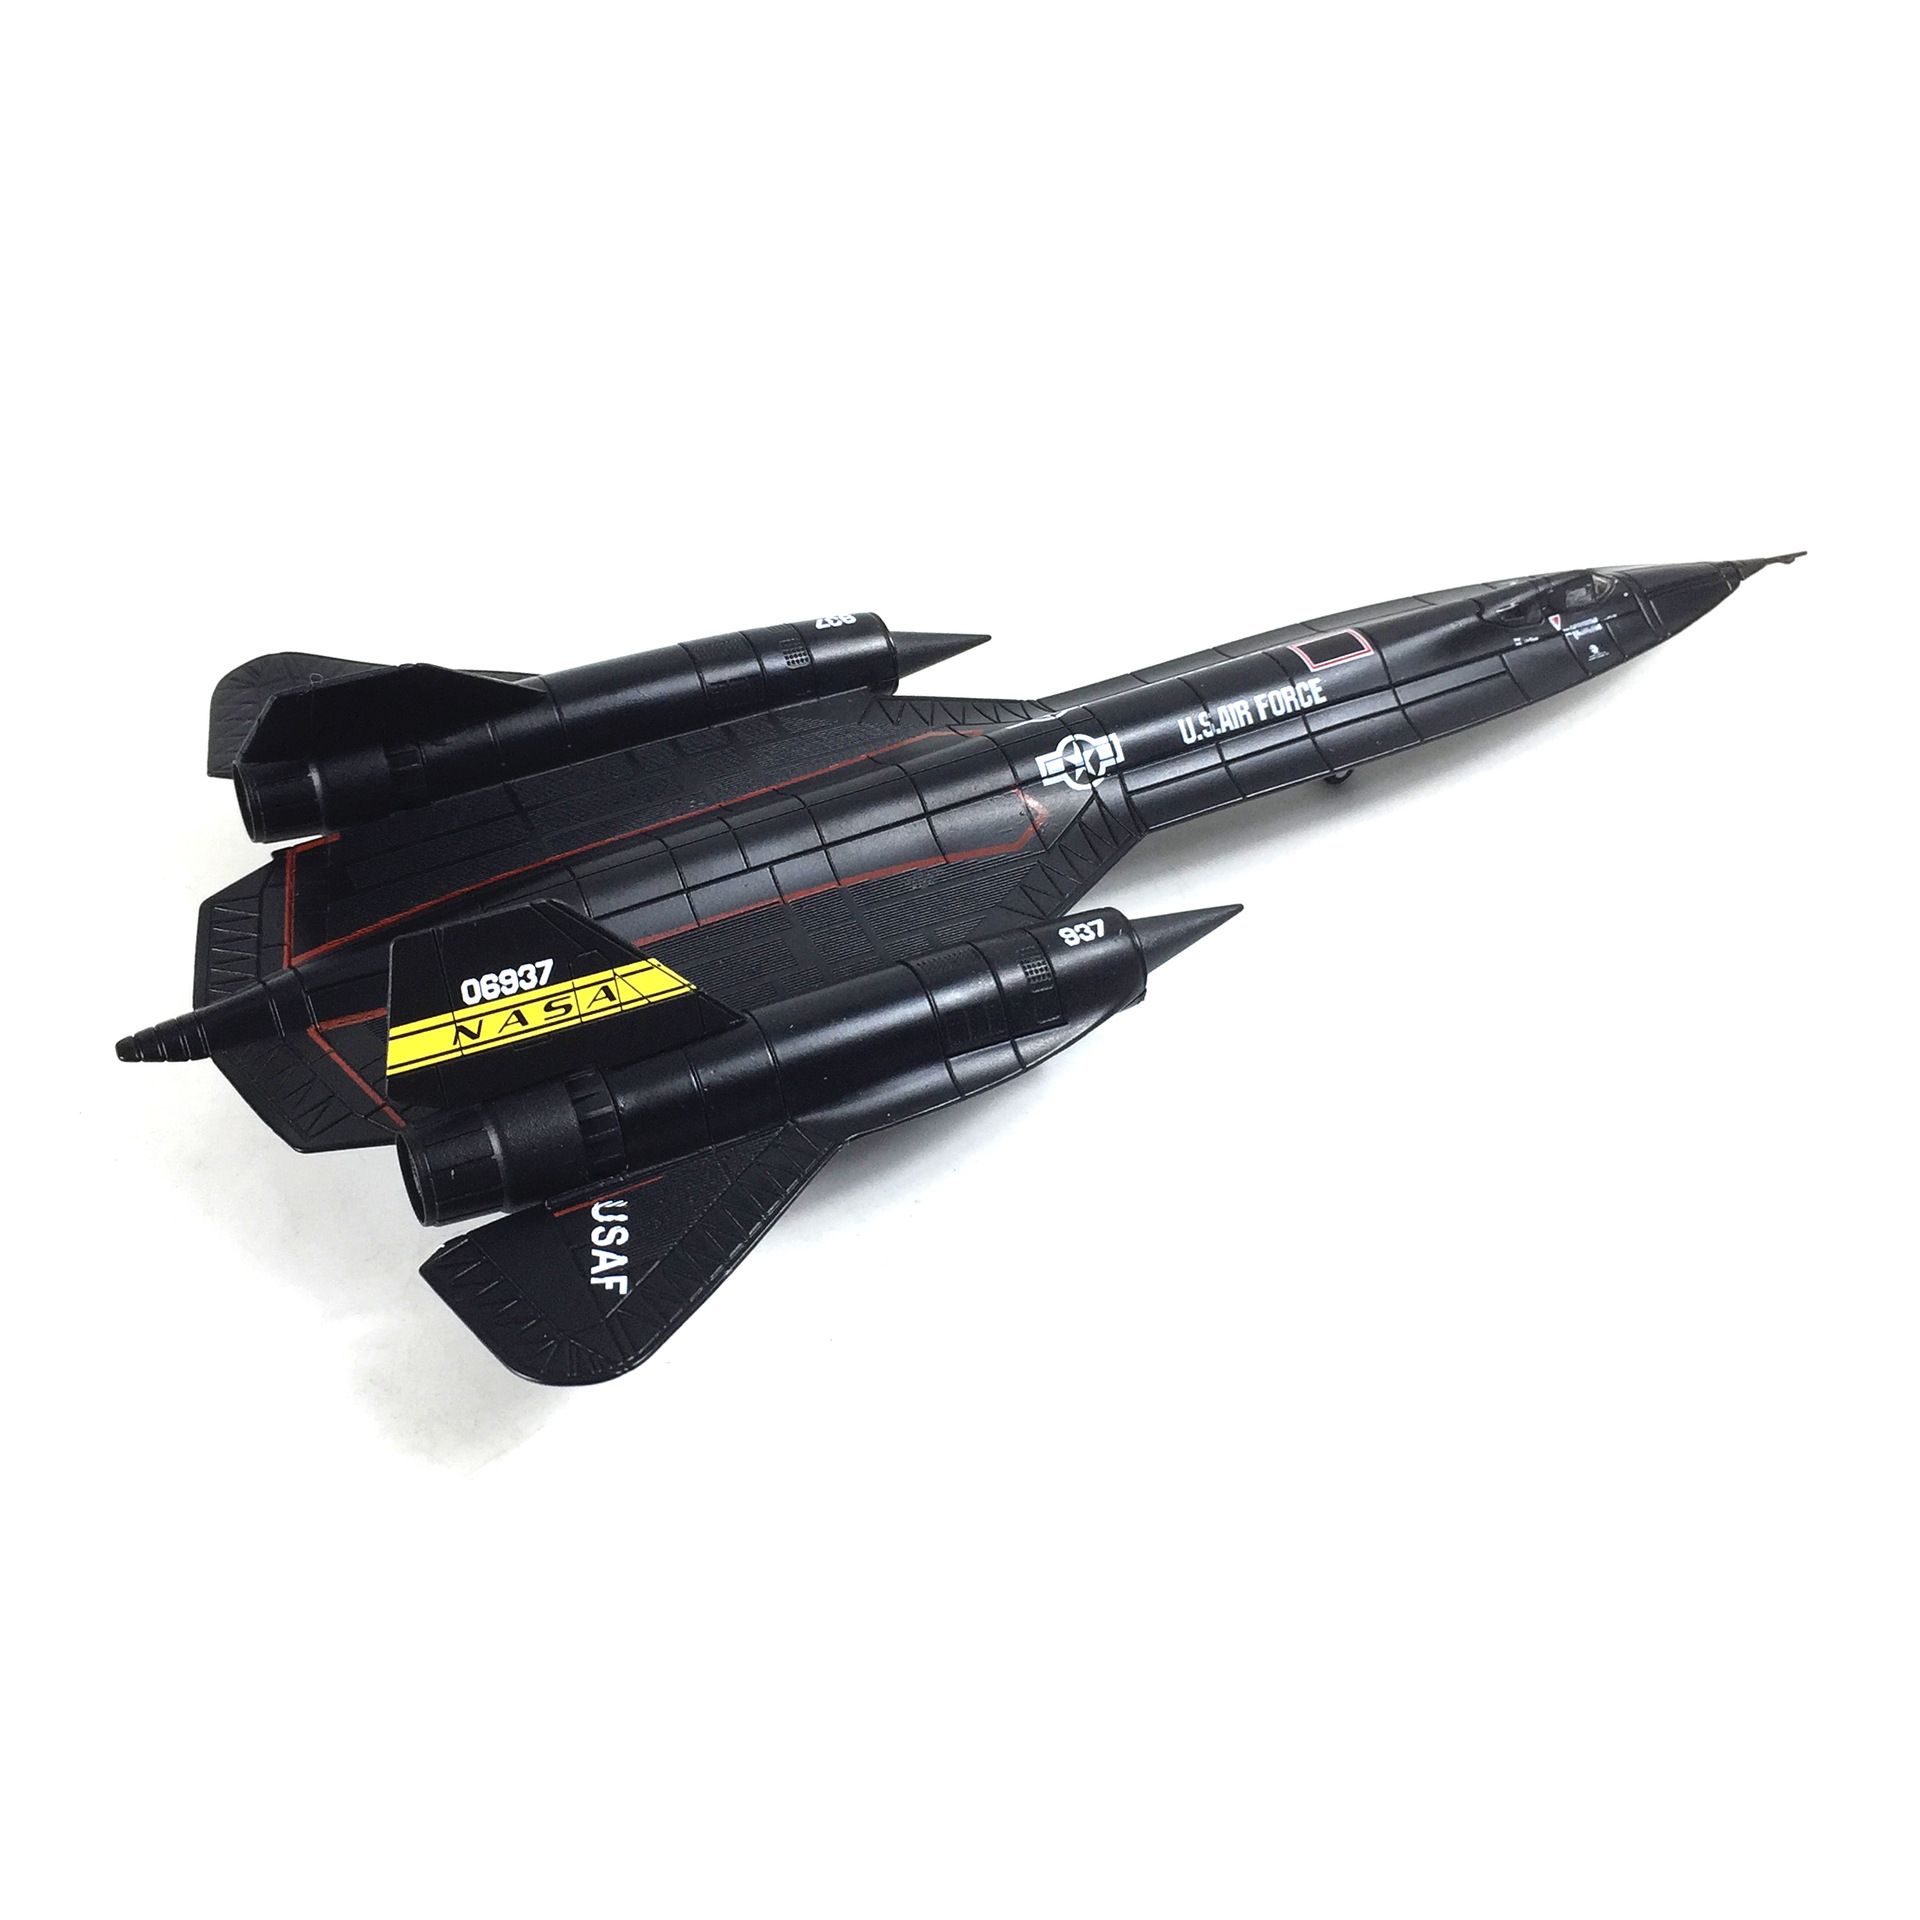  Mô hình máy bay quân sự trinh sát Lockheed YF-12 NASA SR-71 06837 Blackbird tỉ lệ 1:100 Ns models MBQS006 